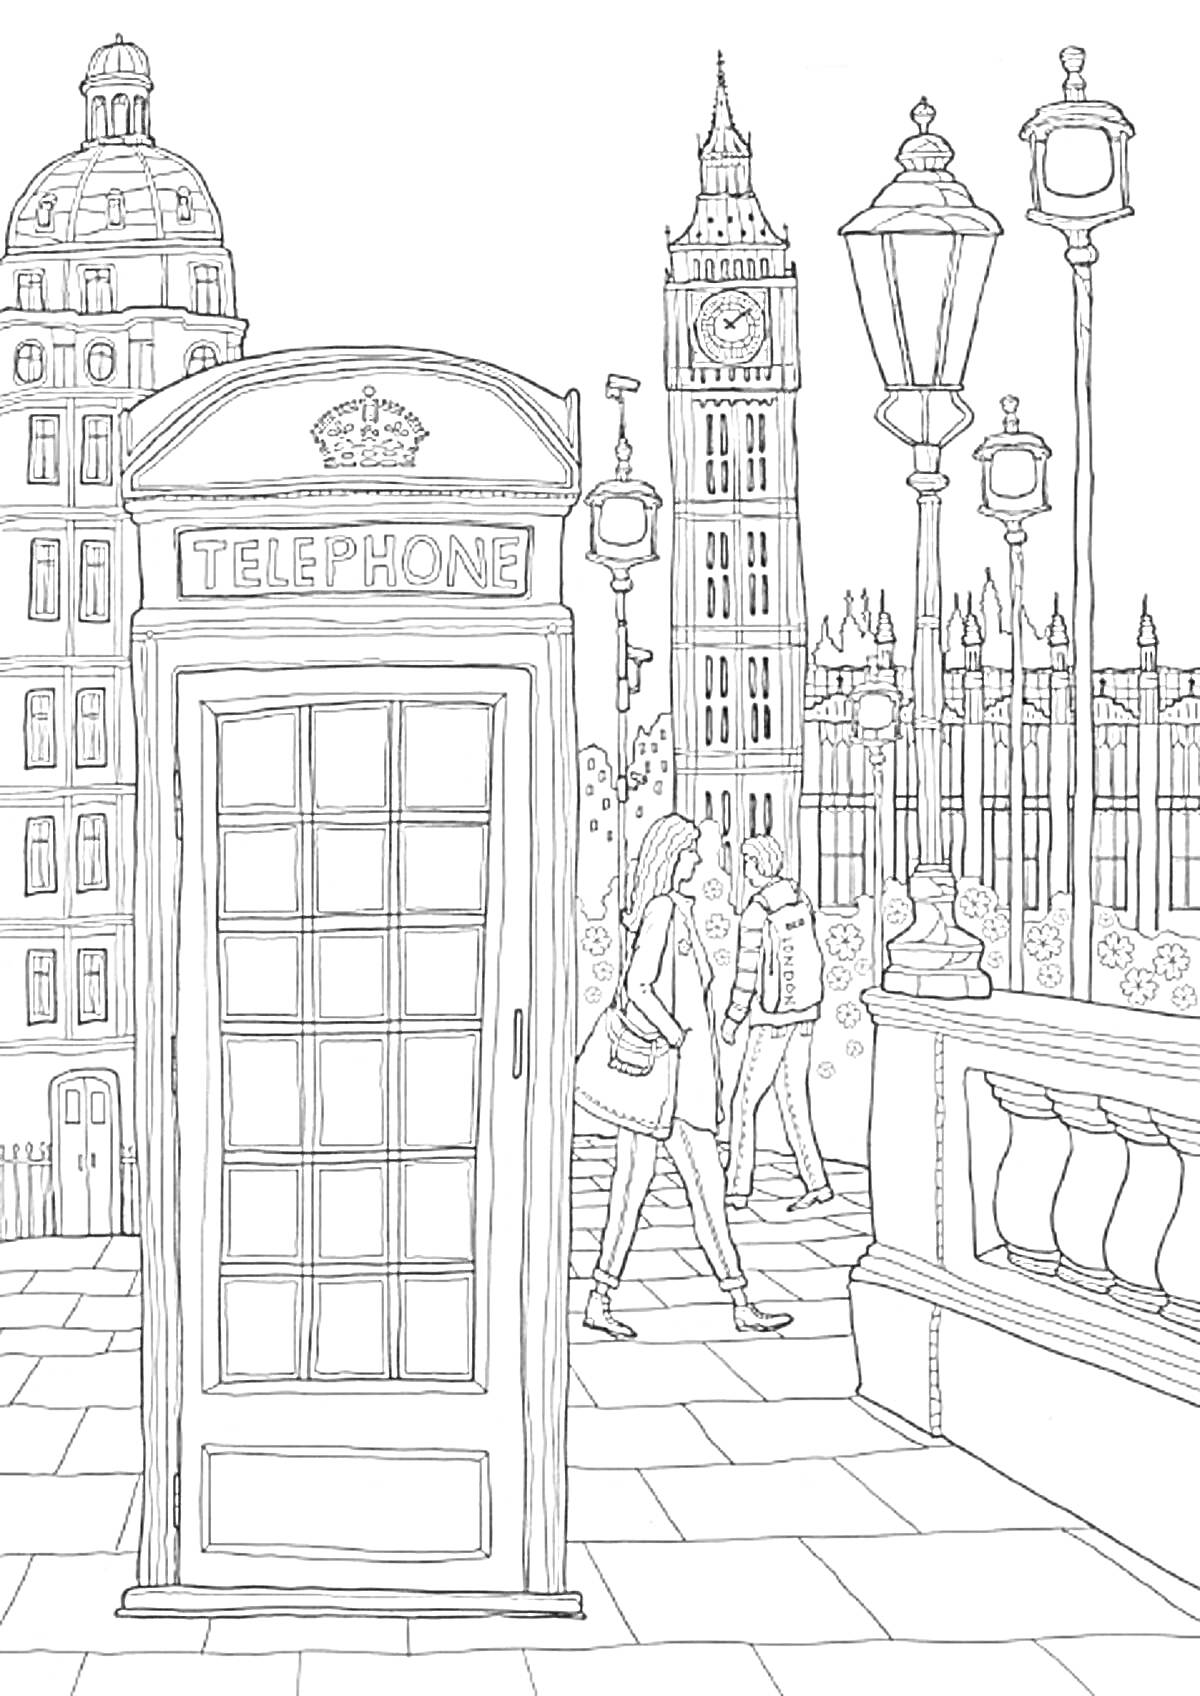 Английский городской пейзаж с телефонной будкой, Биг-Беном, фонарями и гуляющими людьми